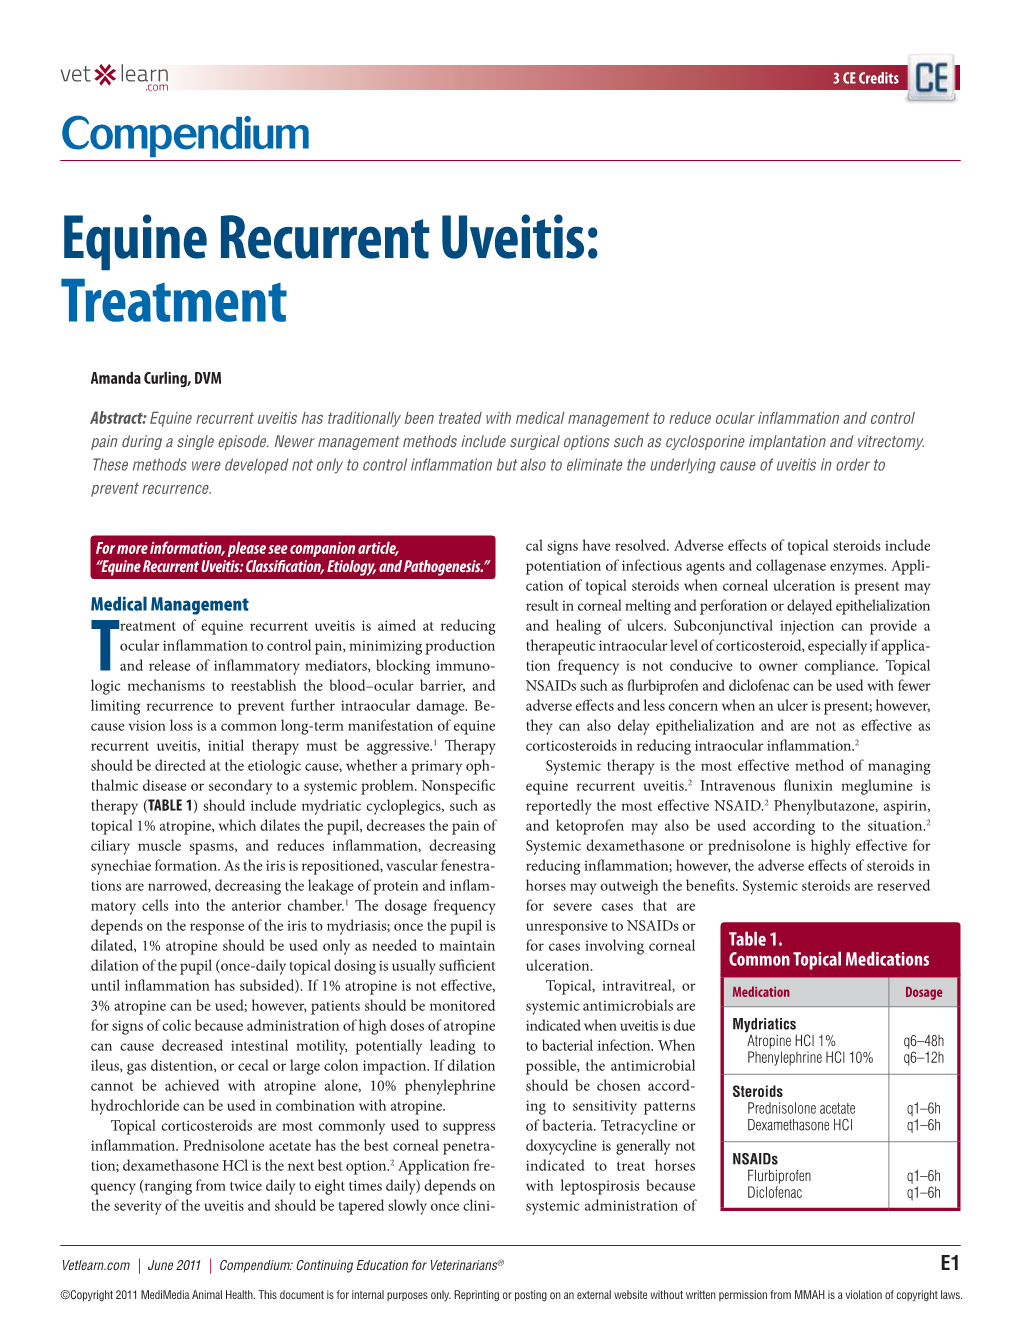 Equine Recurrent Uveitis: Treatment